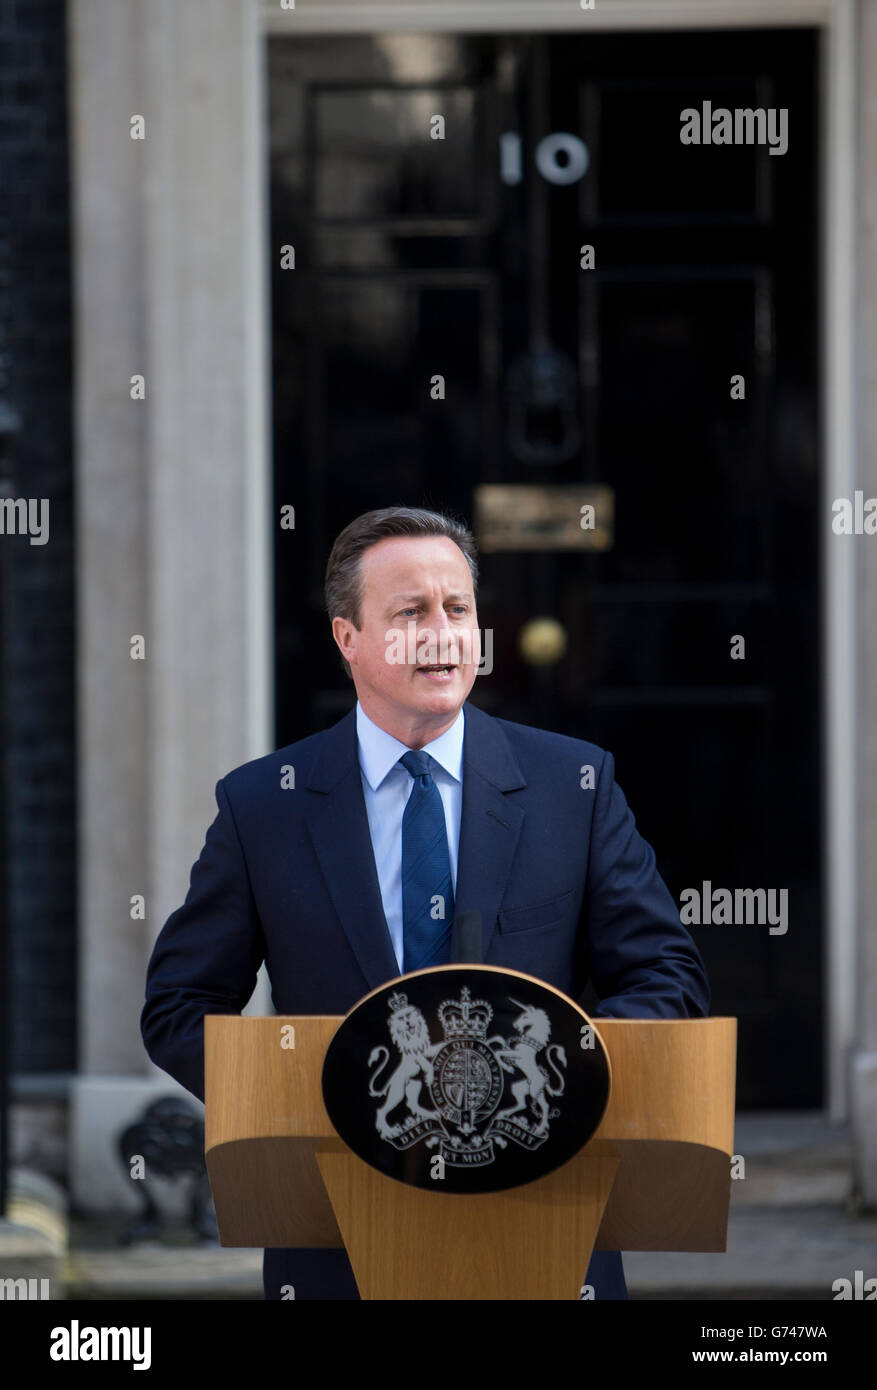 Le premier ministre David Cameron avec son épouse Samantha, publie une déclaration offrant sa démission après le vote sur l'UNION EUROPÉENNE Laisser Banque D'Images